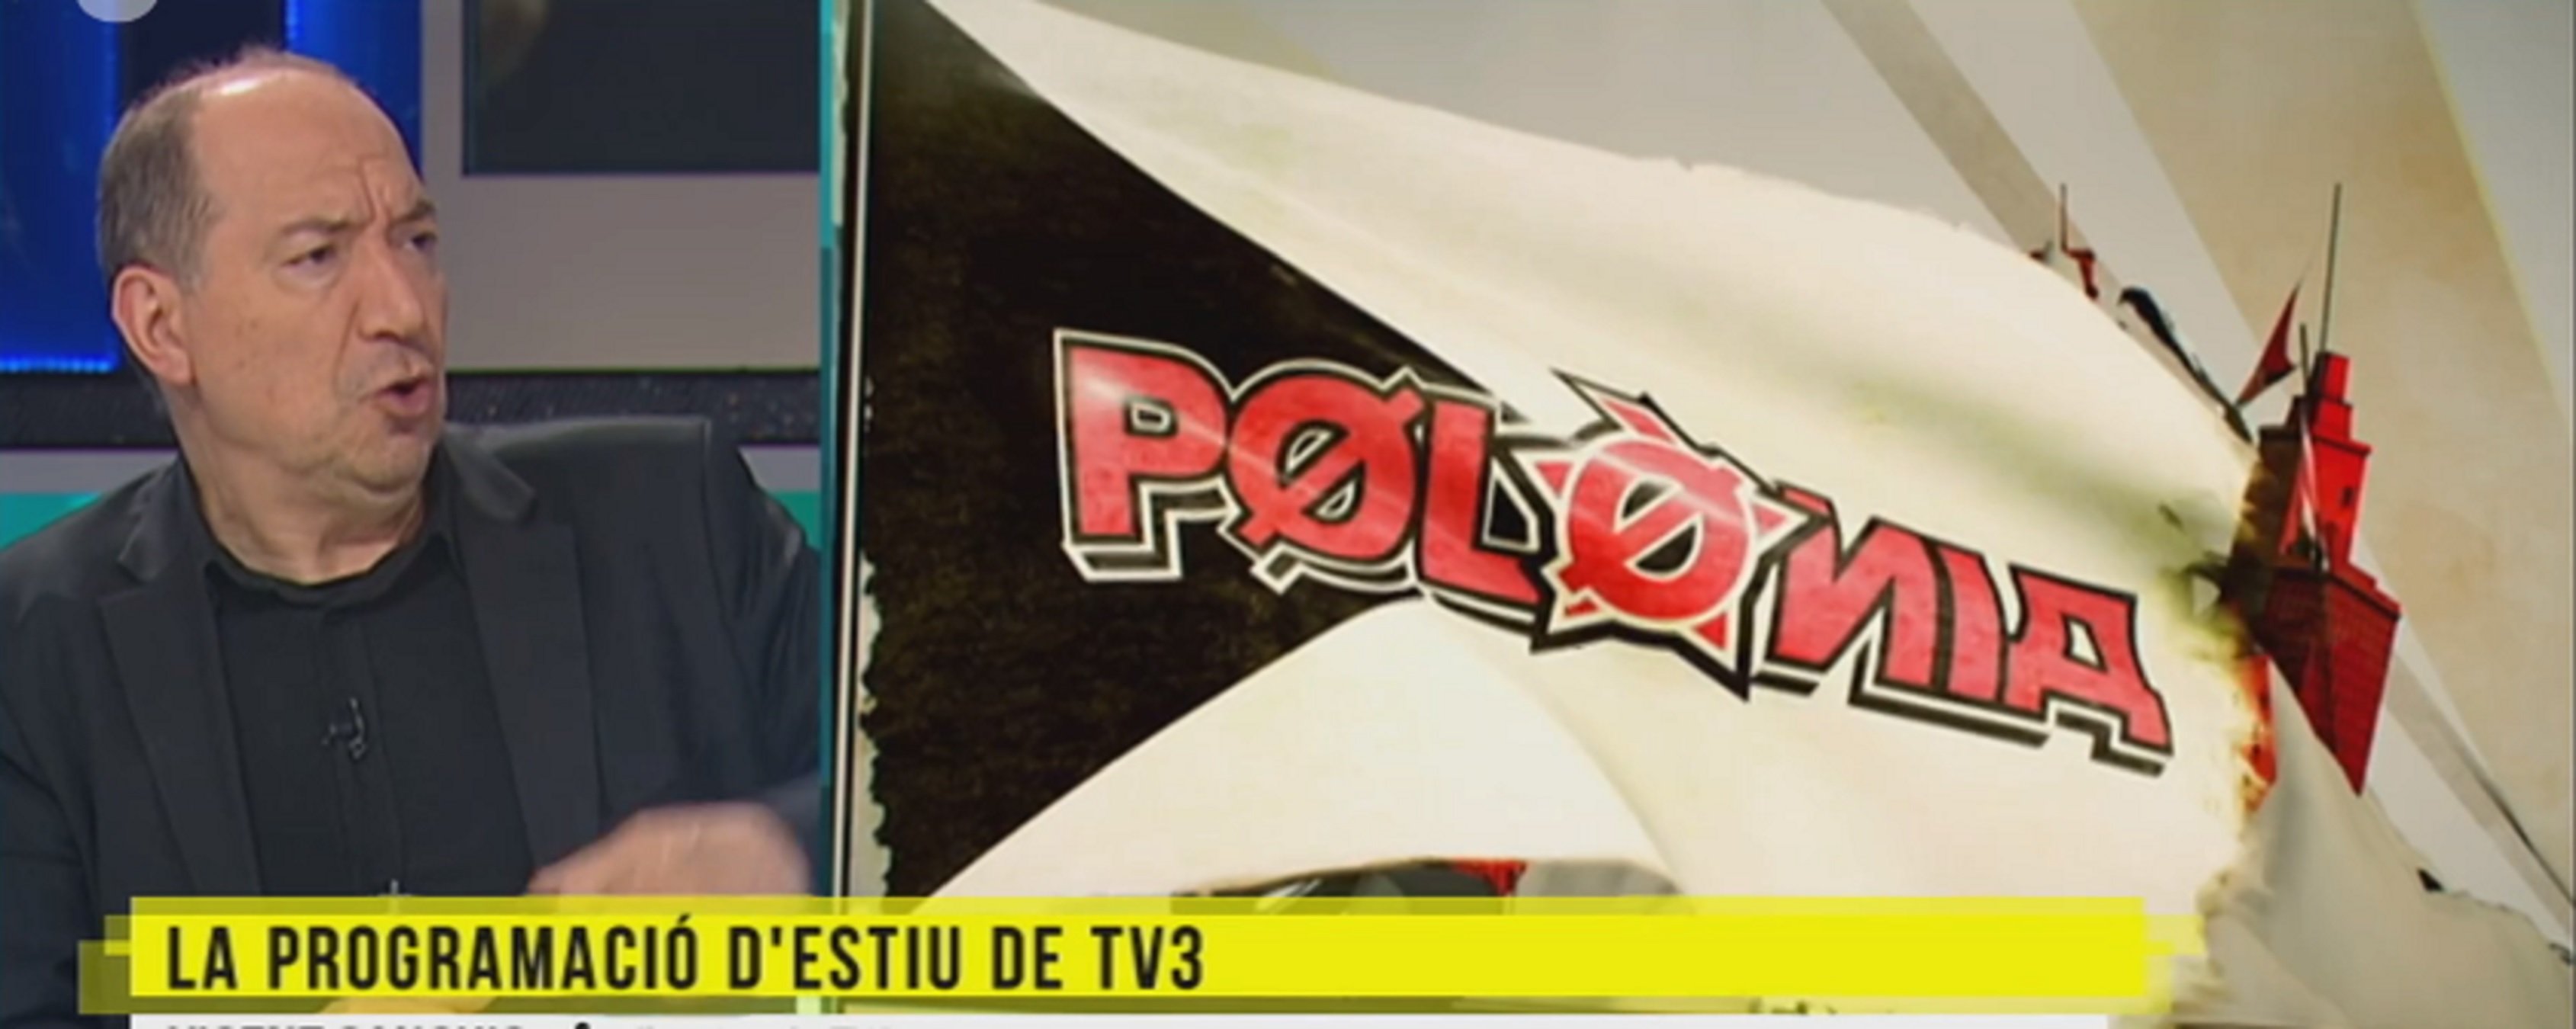 Vicent Sanchis anuncia el dilema a TV3: "Què em carrego, Polònia o Està passant?